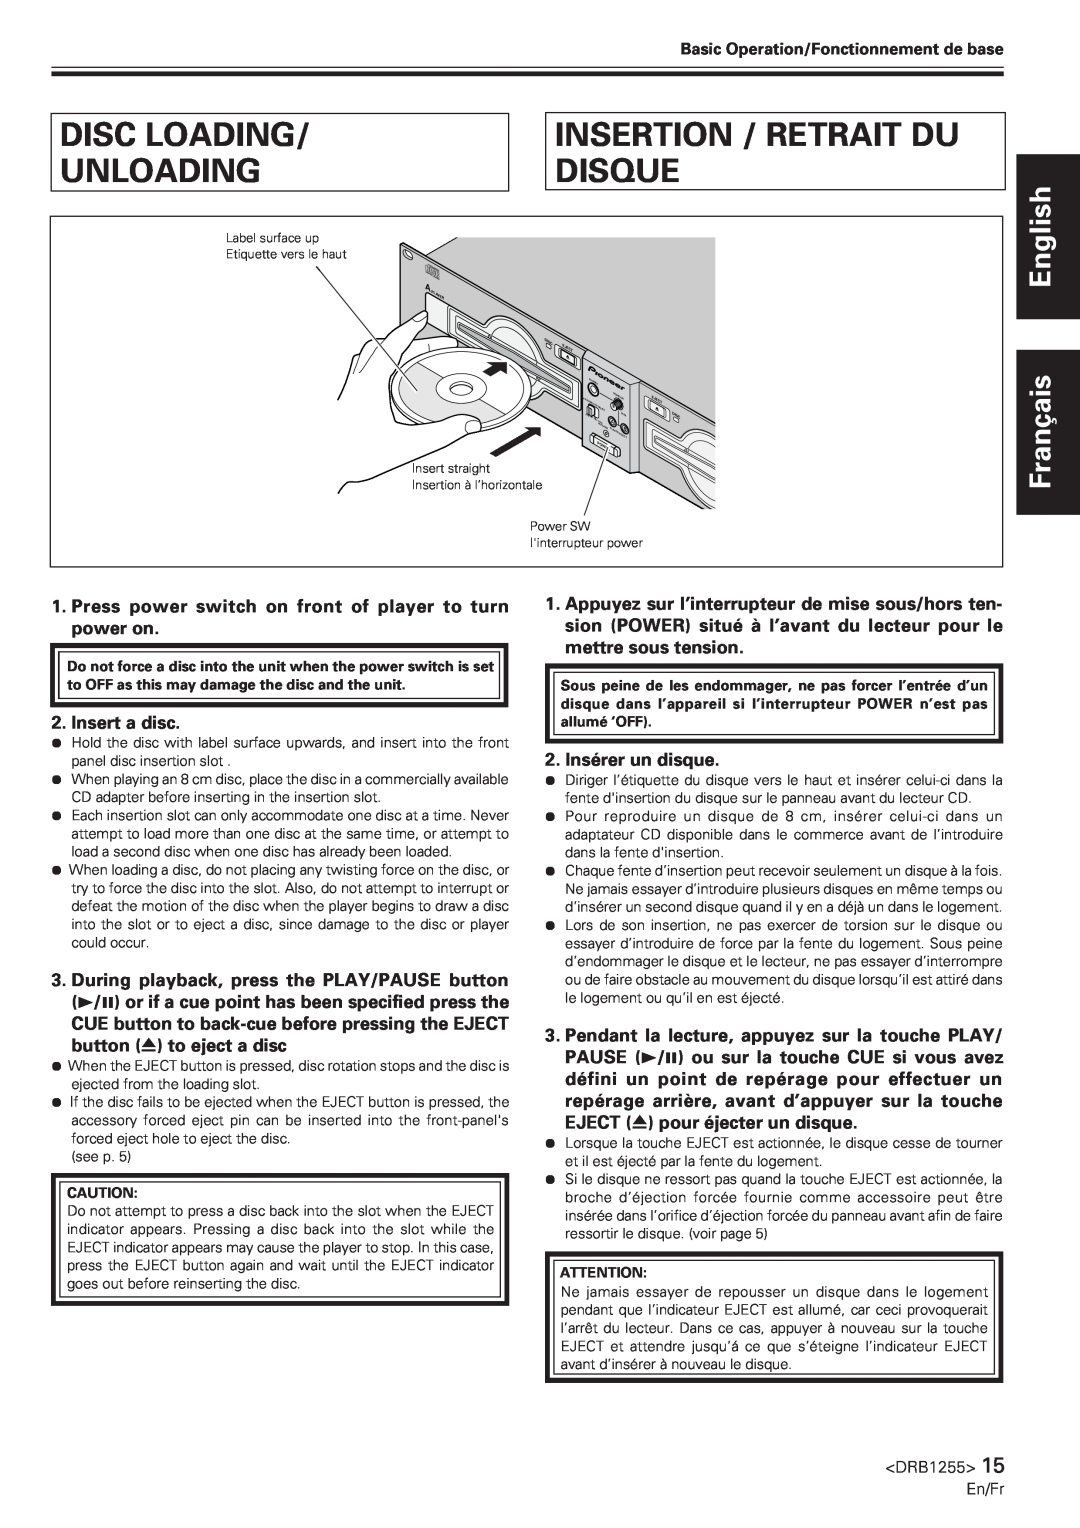 Pioneer CMX-5000 manual Disc Loading, Insertion / Retrait Du, Unloading, Disque, English Français 